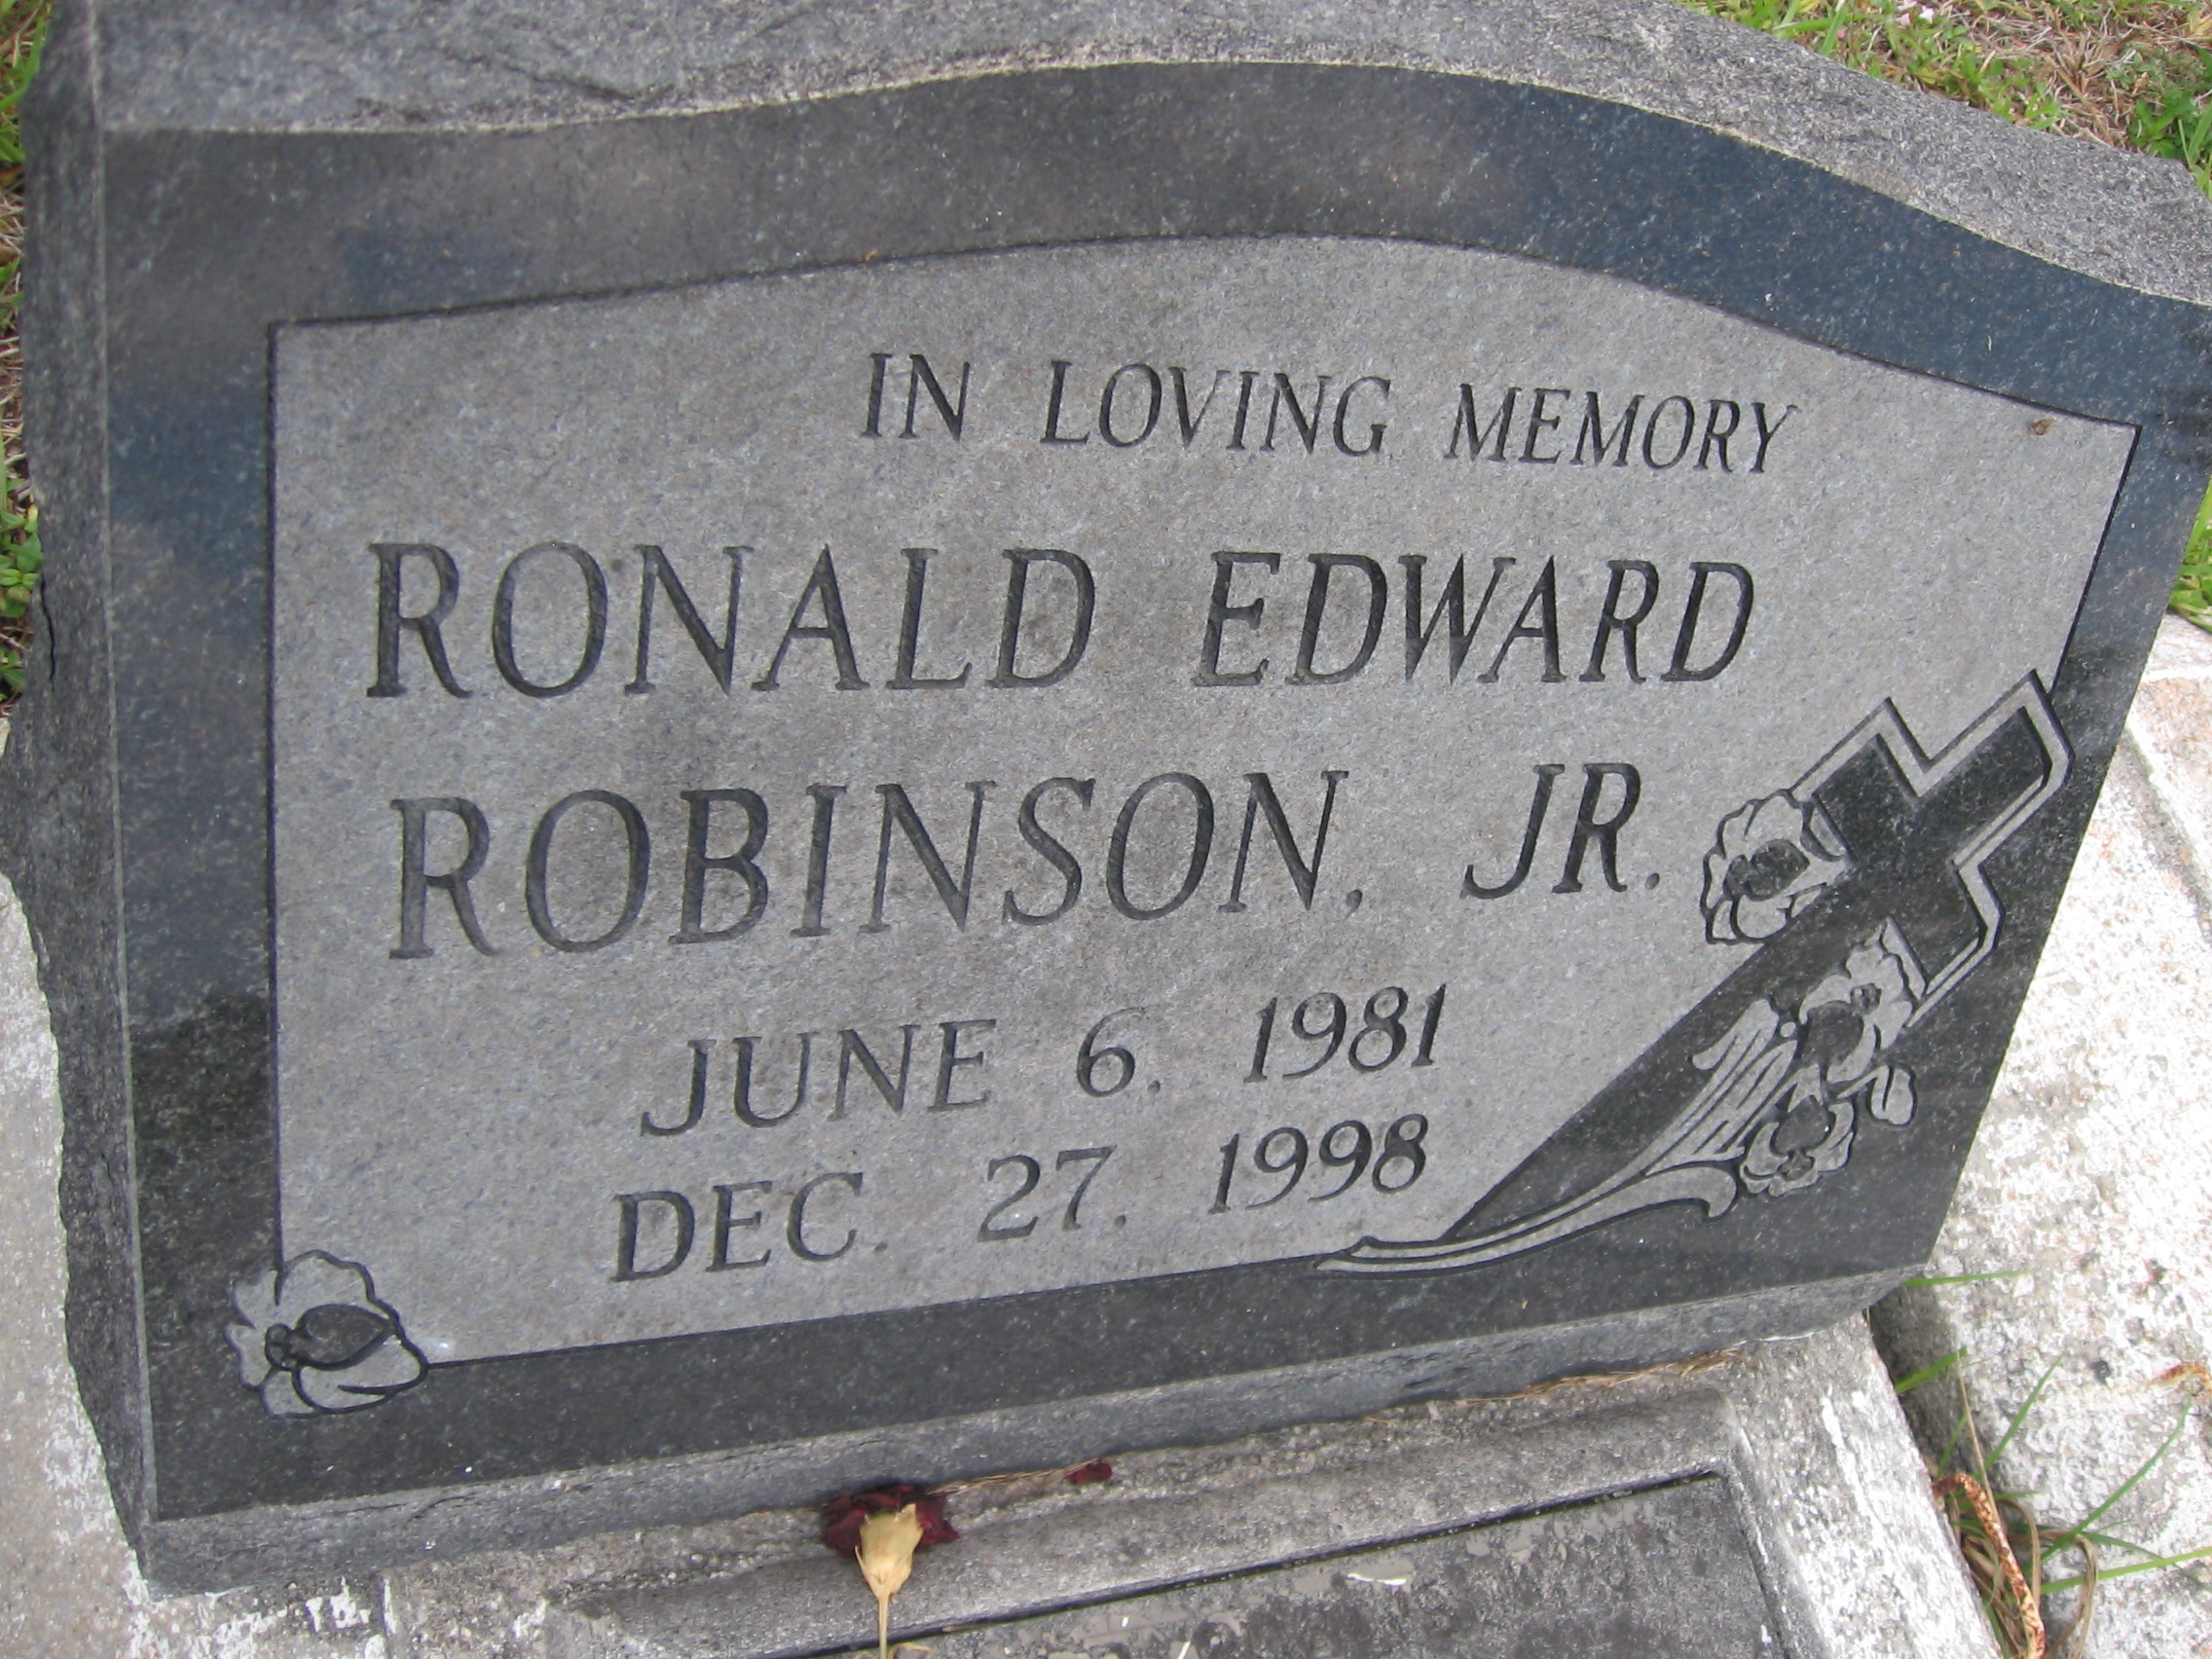 Ronald Edward Robinson, Jr